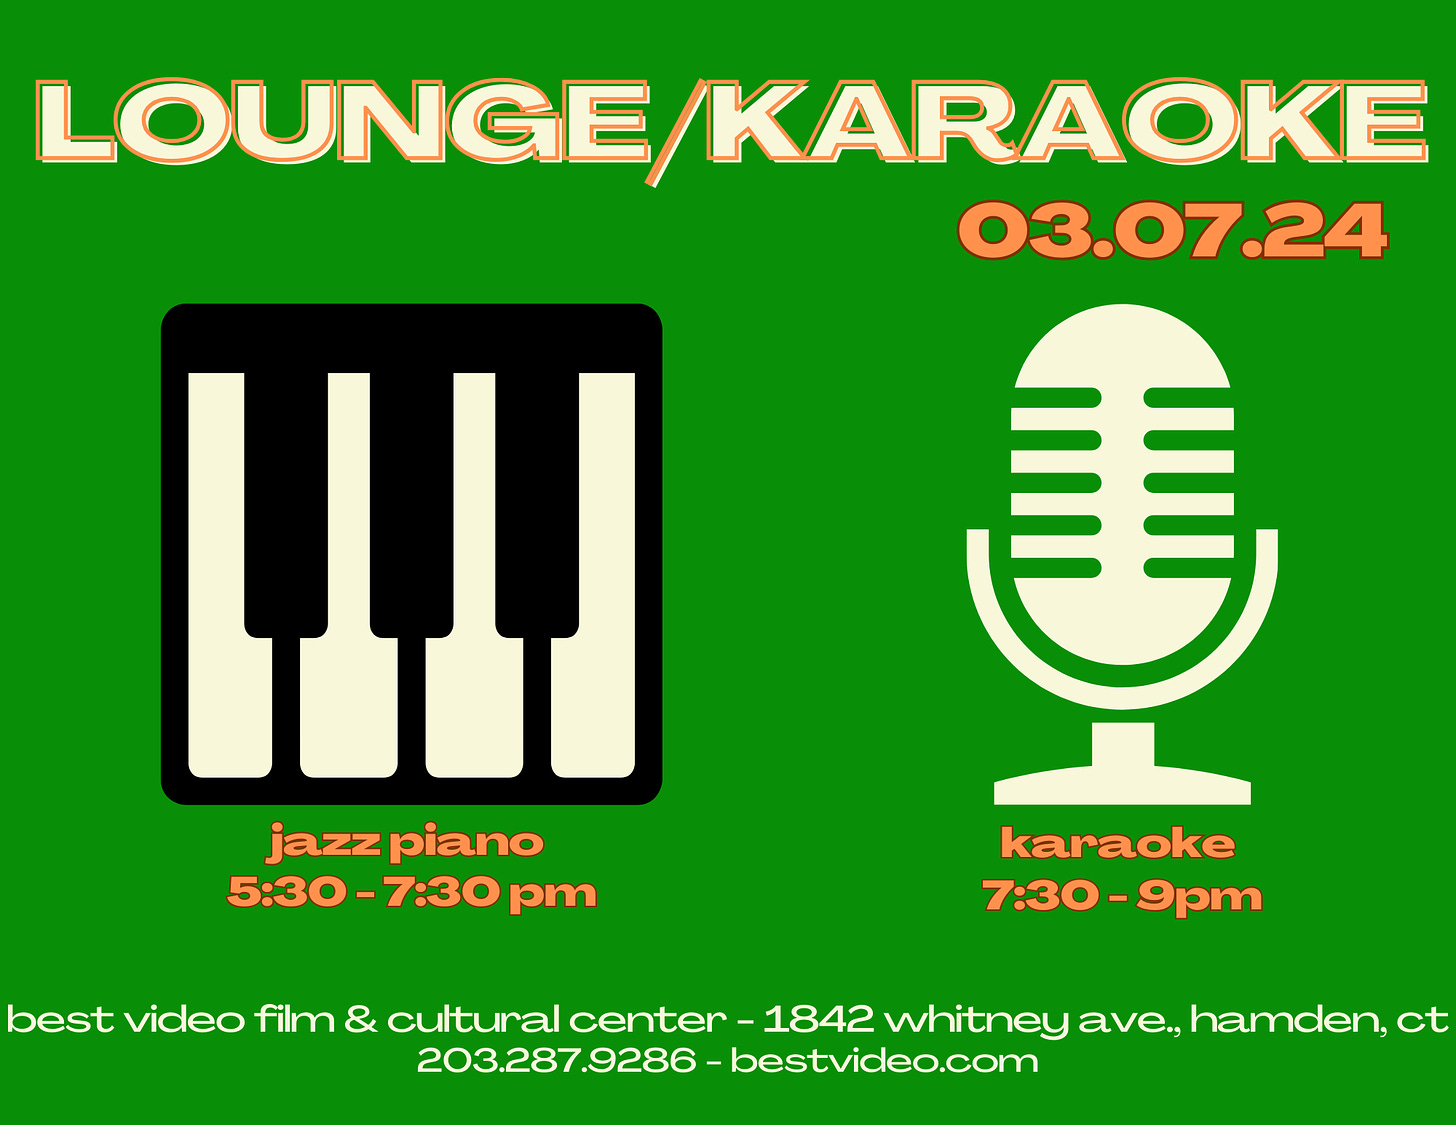 Lounge/Karaoke Night